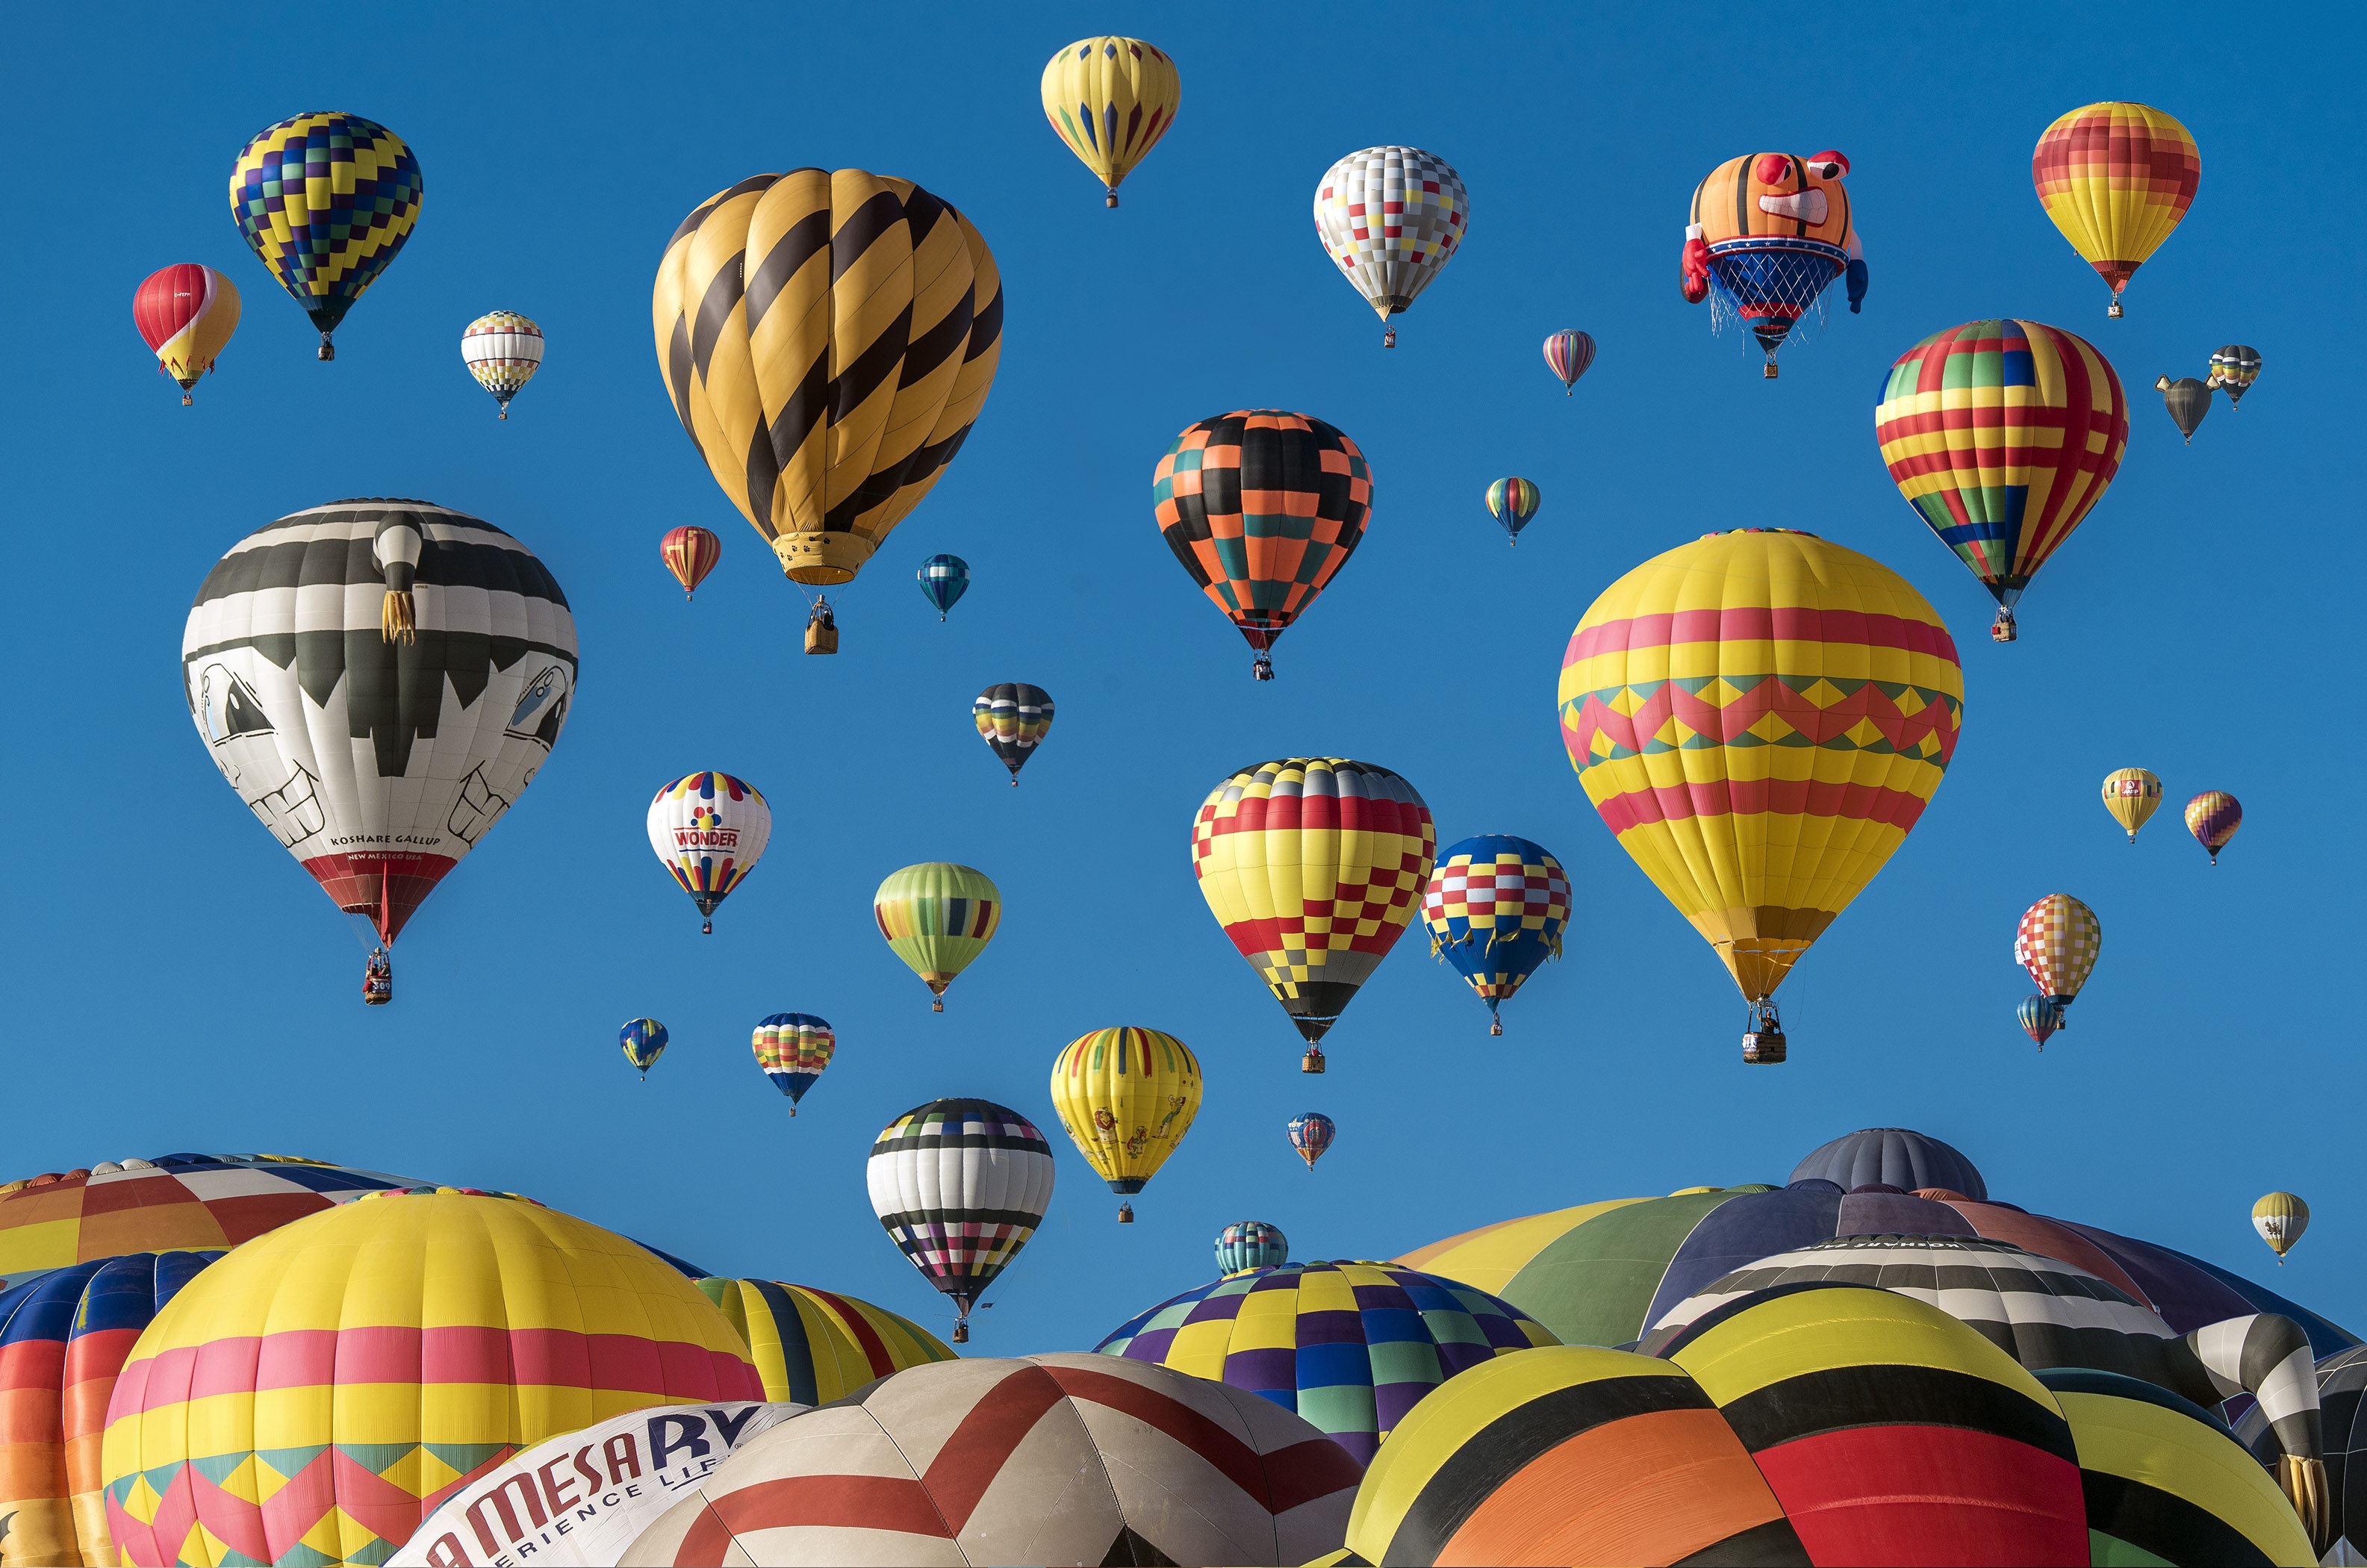 Фото шар, воздушный шар, приключения, летать, самолеты, автомобиль, красочный, полет, игрушка, фестиваль, иллюстрация, воздушные шары, полёт горячим воздухом, атмосфера земли, пейзажи - бесплатные картинки на Fonwall